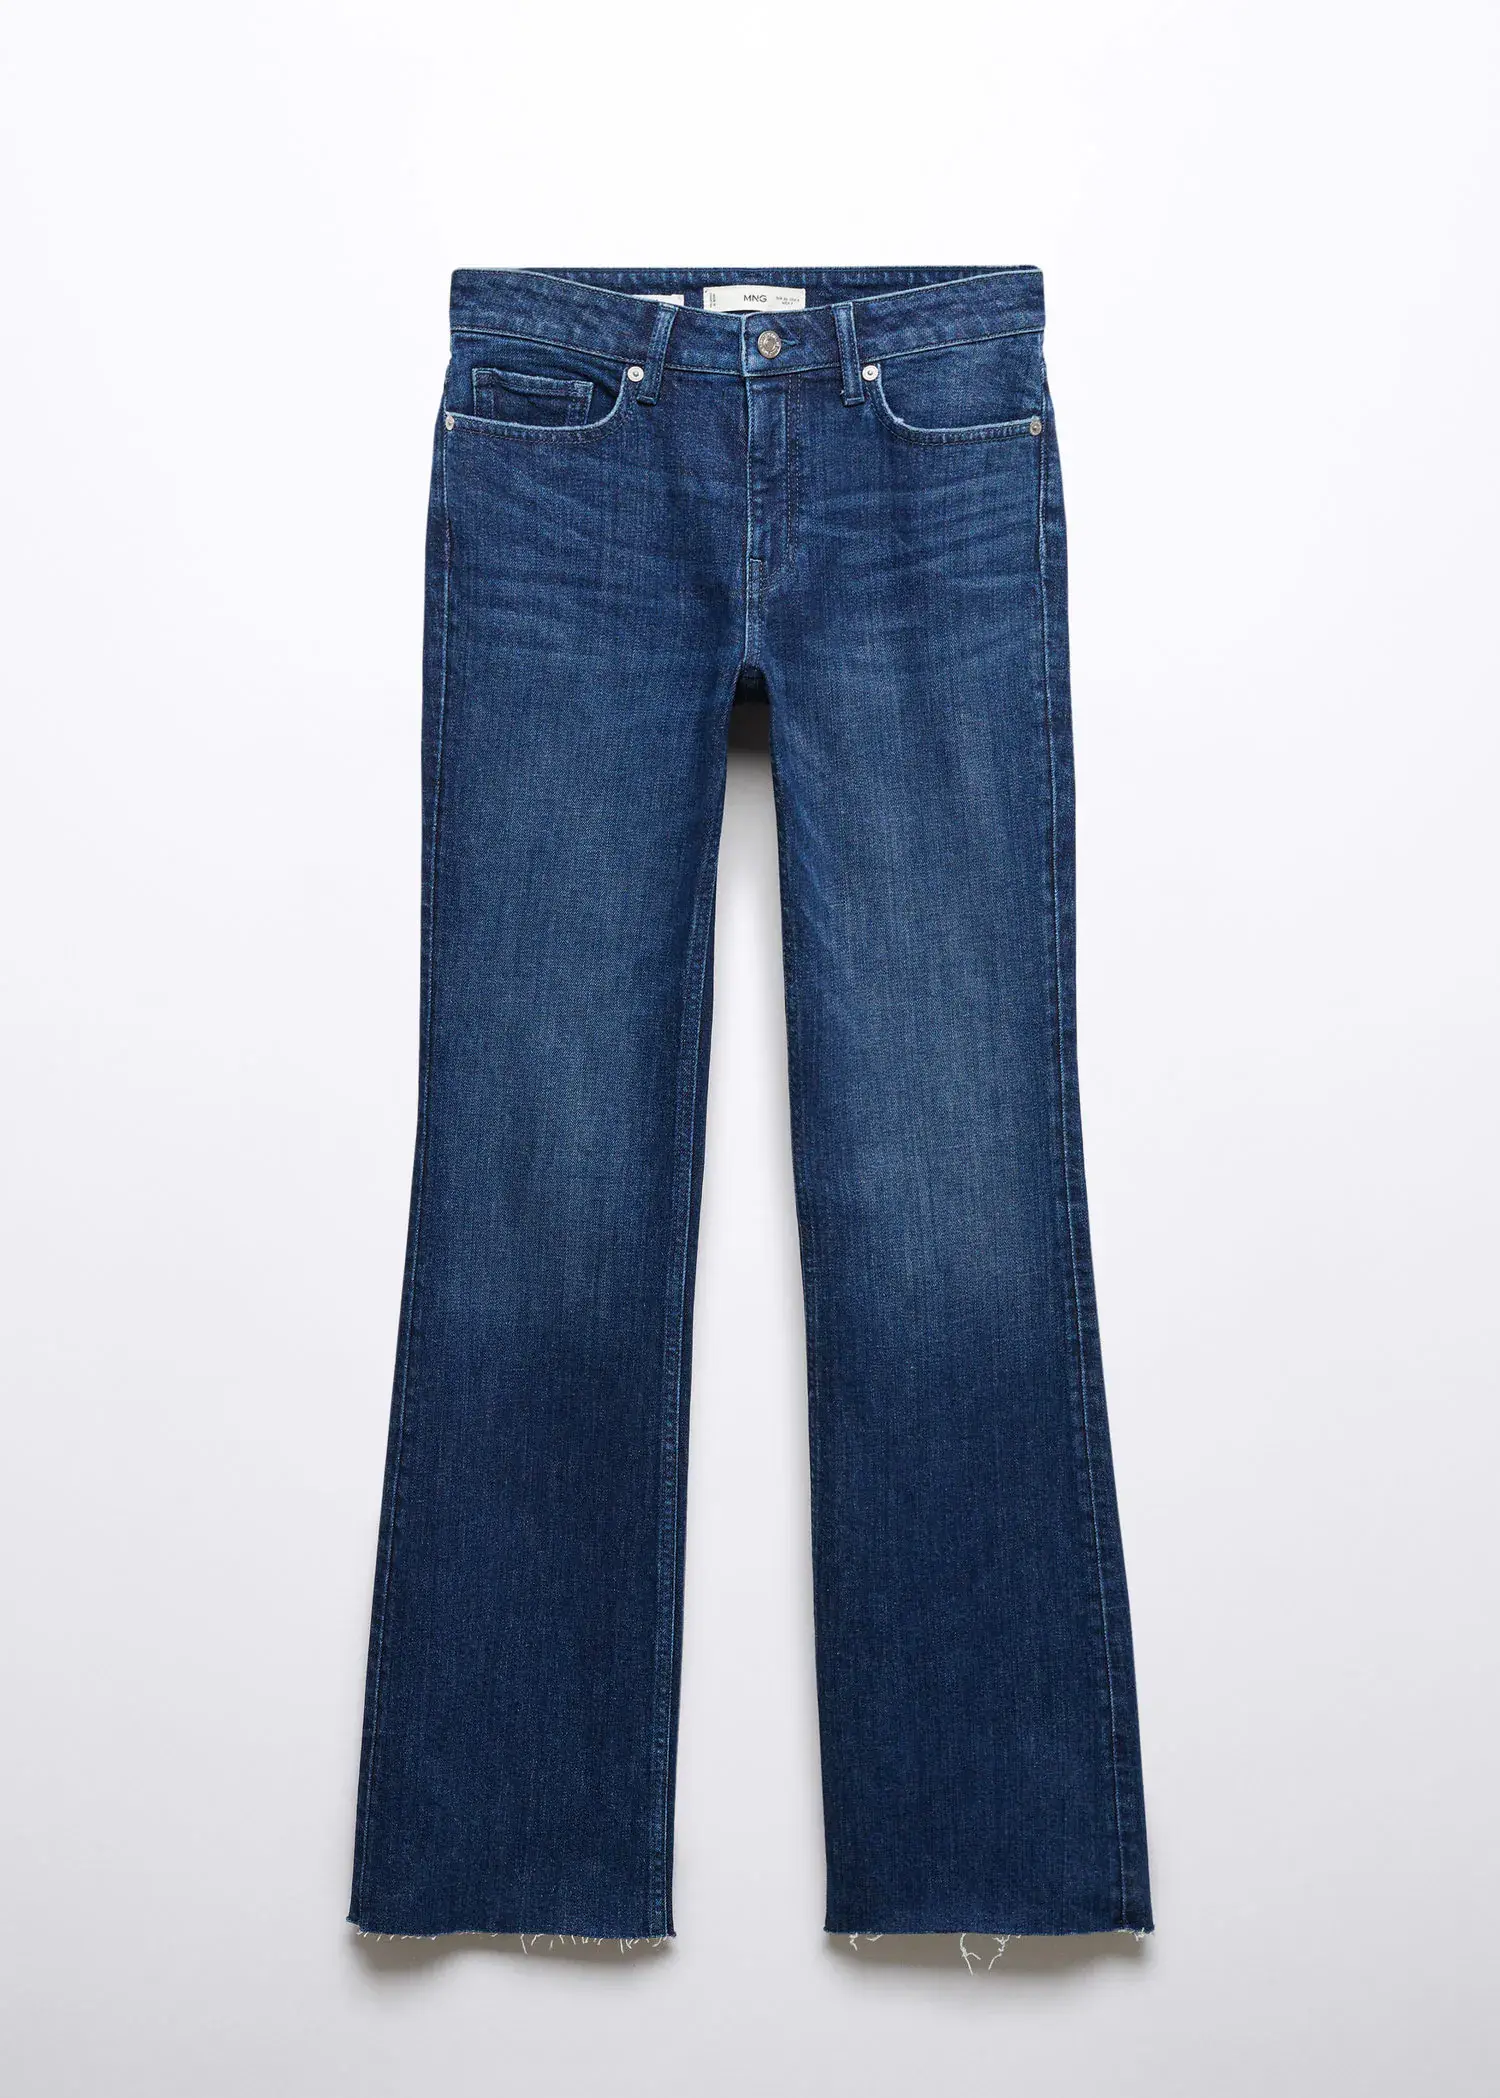 Mango Jeans flare com cintura de altura média. 1